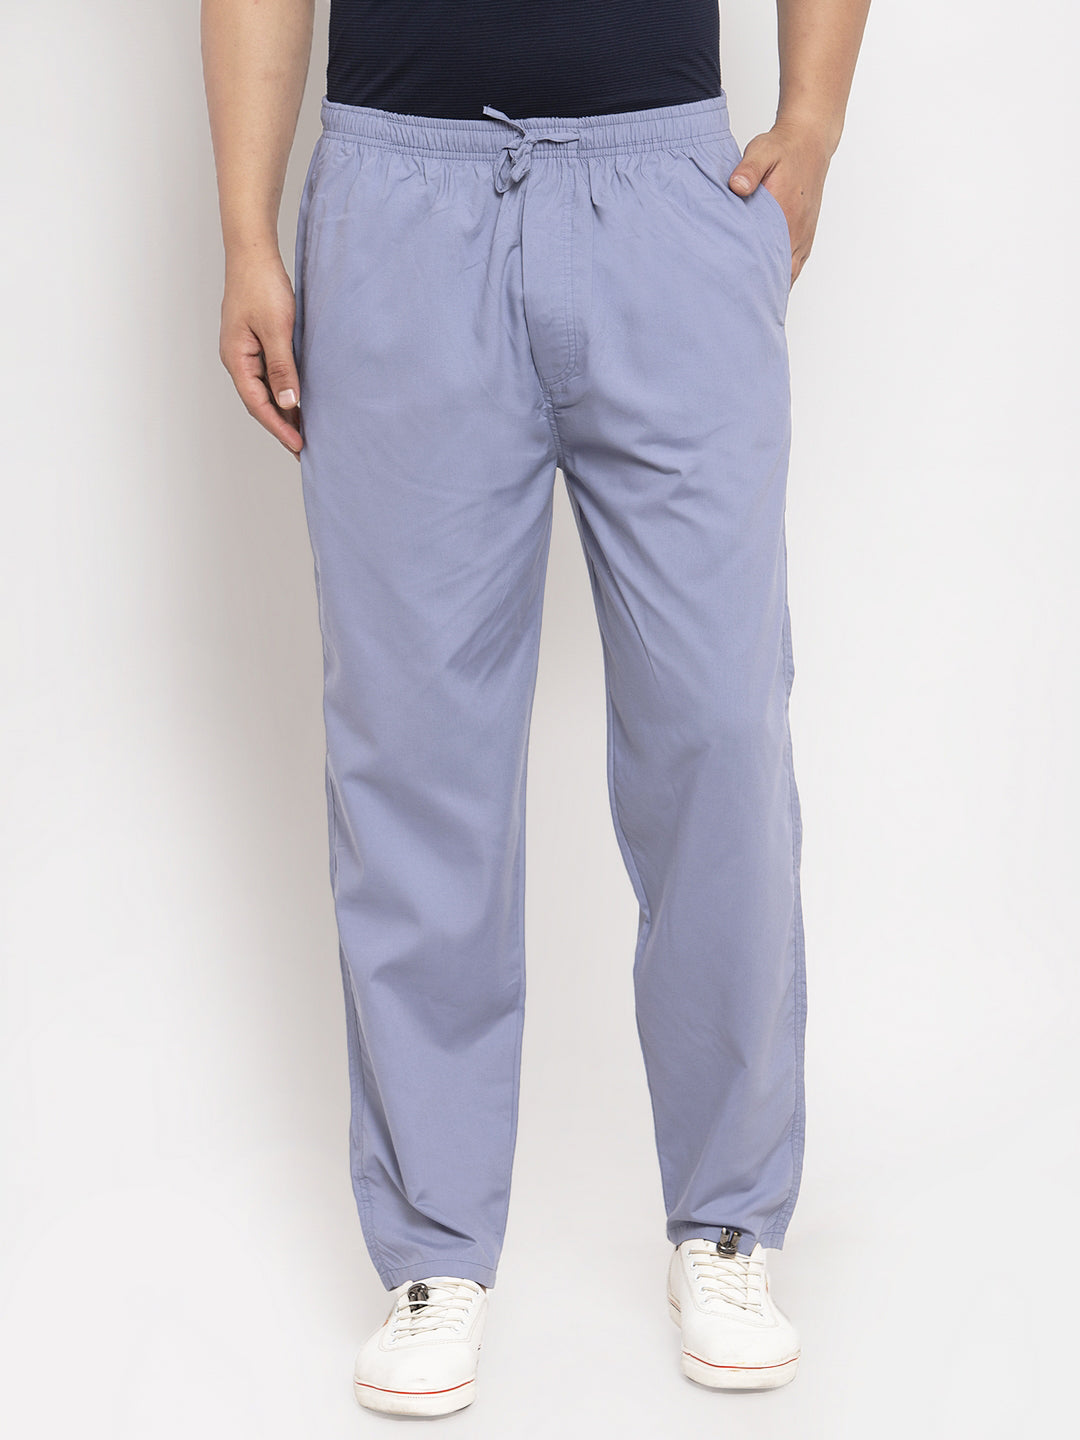 Jainish Men's Grey Solid Cotton Track Pants ( JOG 011Light-Grey ) - Distacart